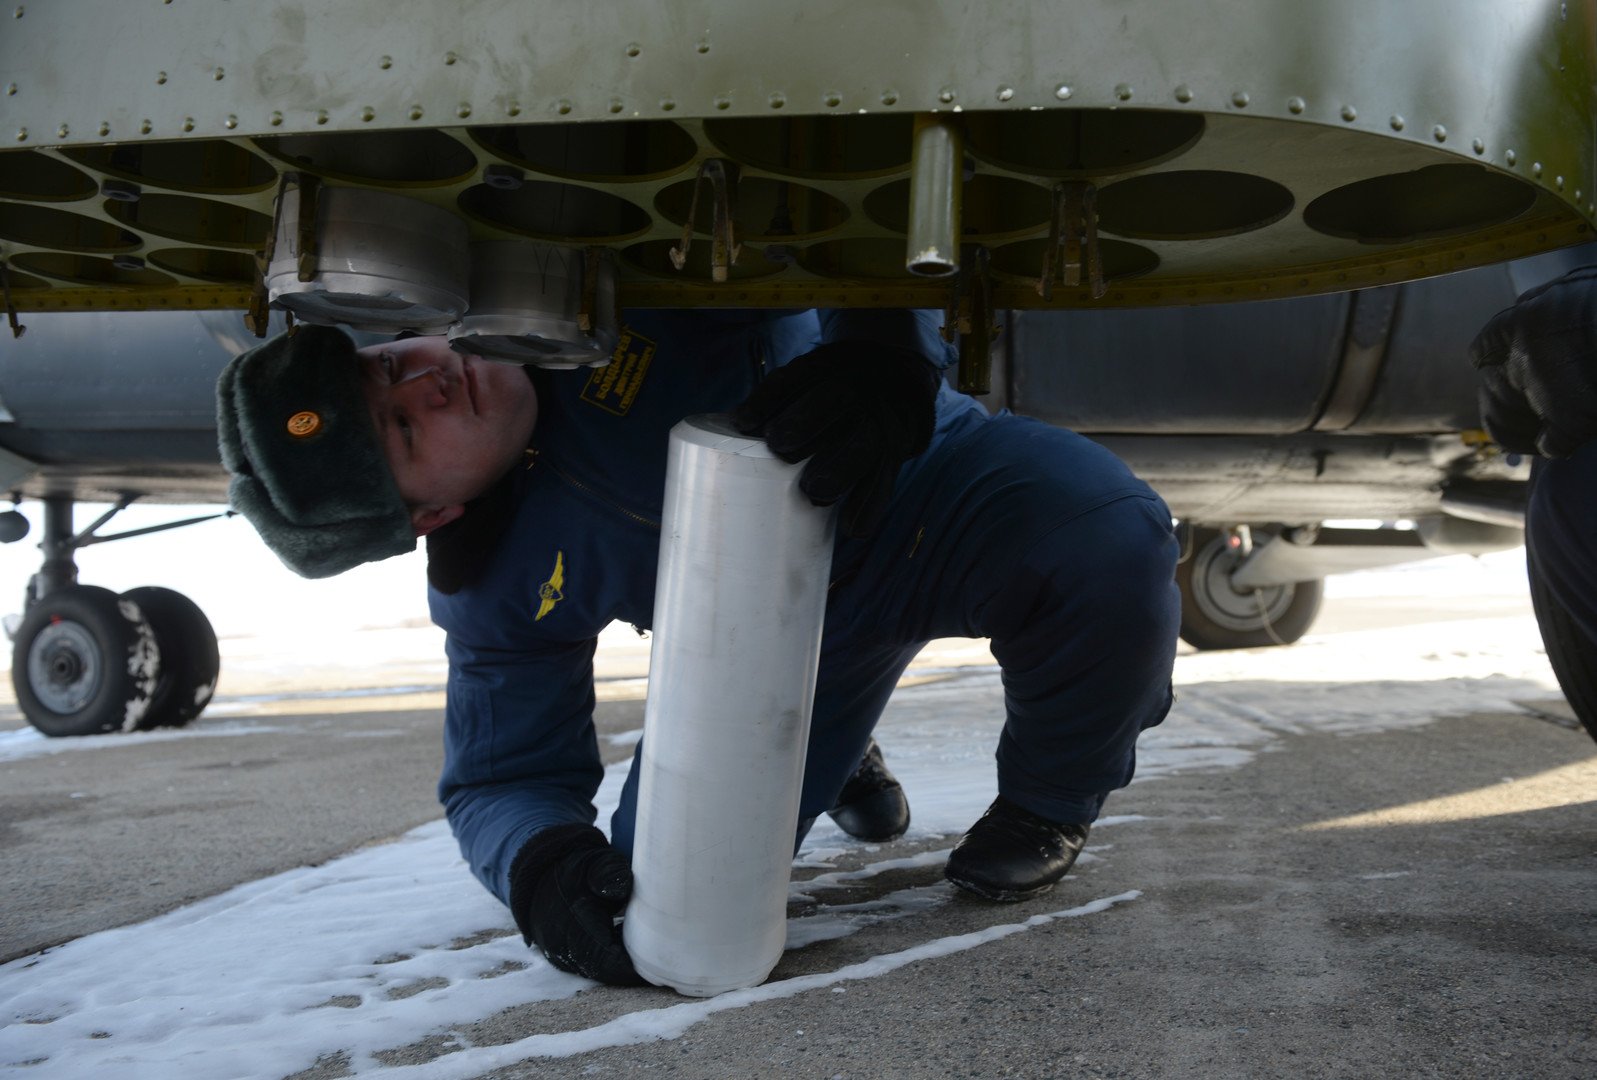 إعداد مروحية مي-8 قبل تنفيذ الطيران التدريبي بمهمة زرع ألغام دخانية في القاعدة الجوية